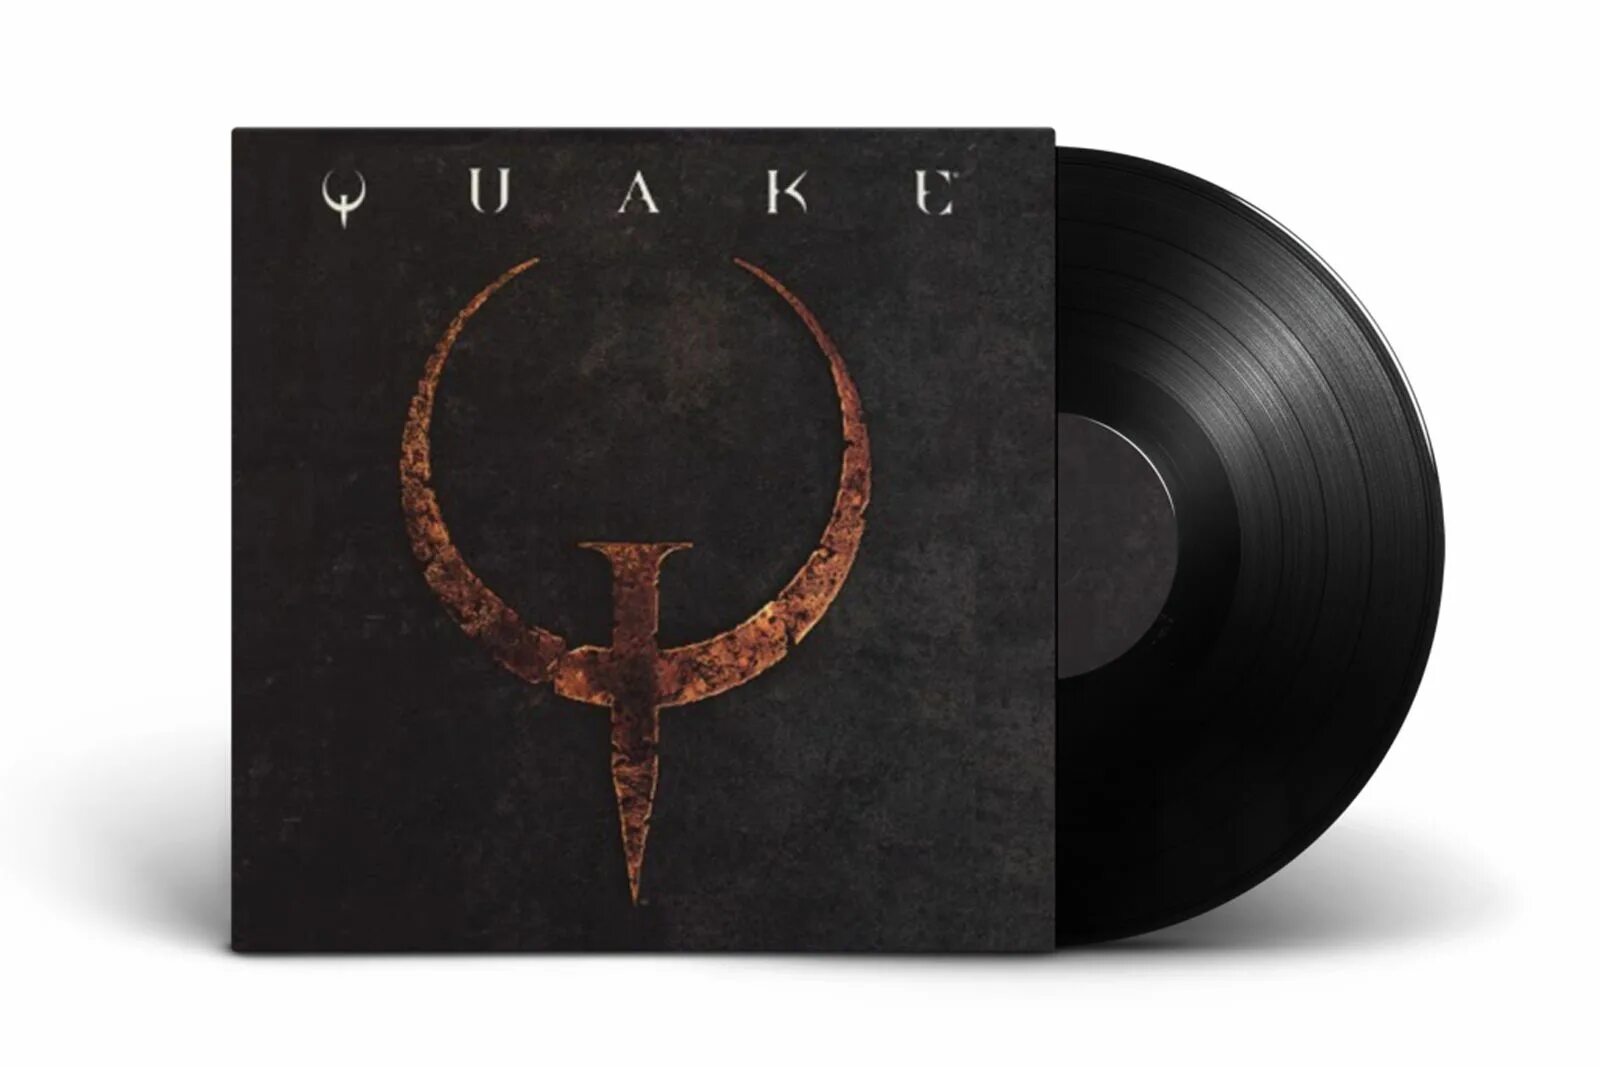 Альбом песен треков. Nine inch Nails в Quake 2. Nine inch Nails Quake 2 LP. Ящики Nine inch Nails Quake. Nine inch Nails Quake album.